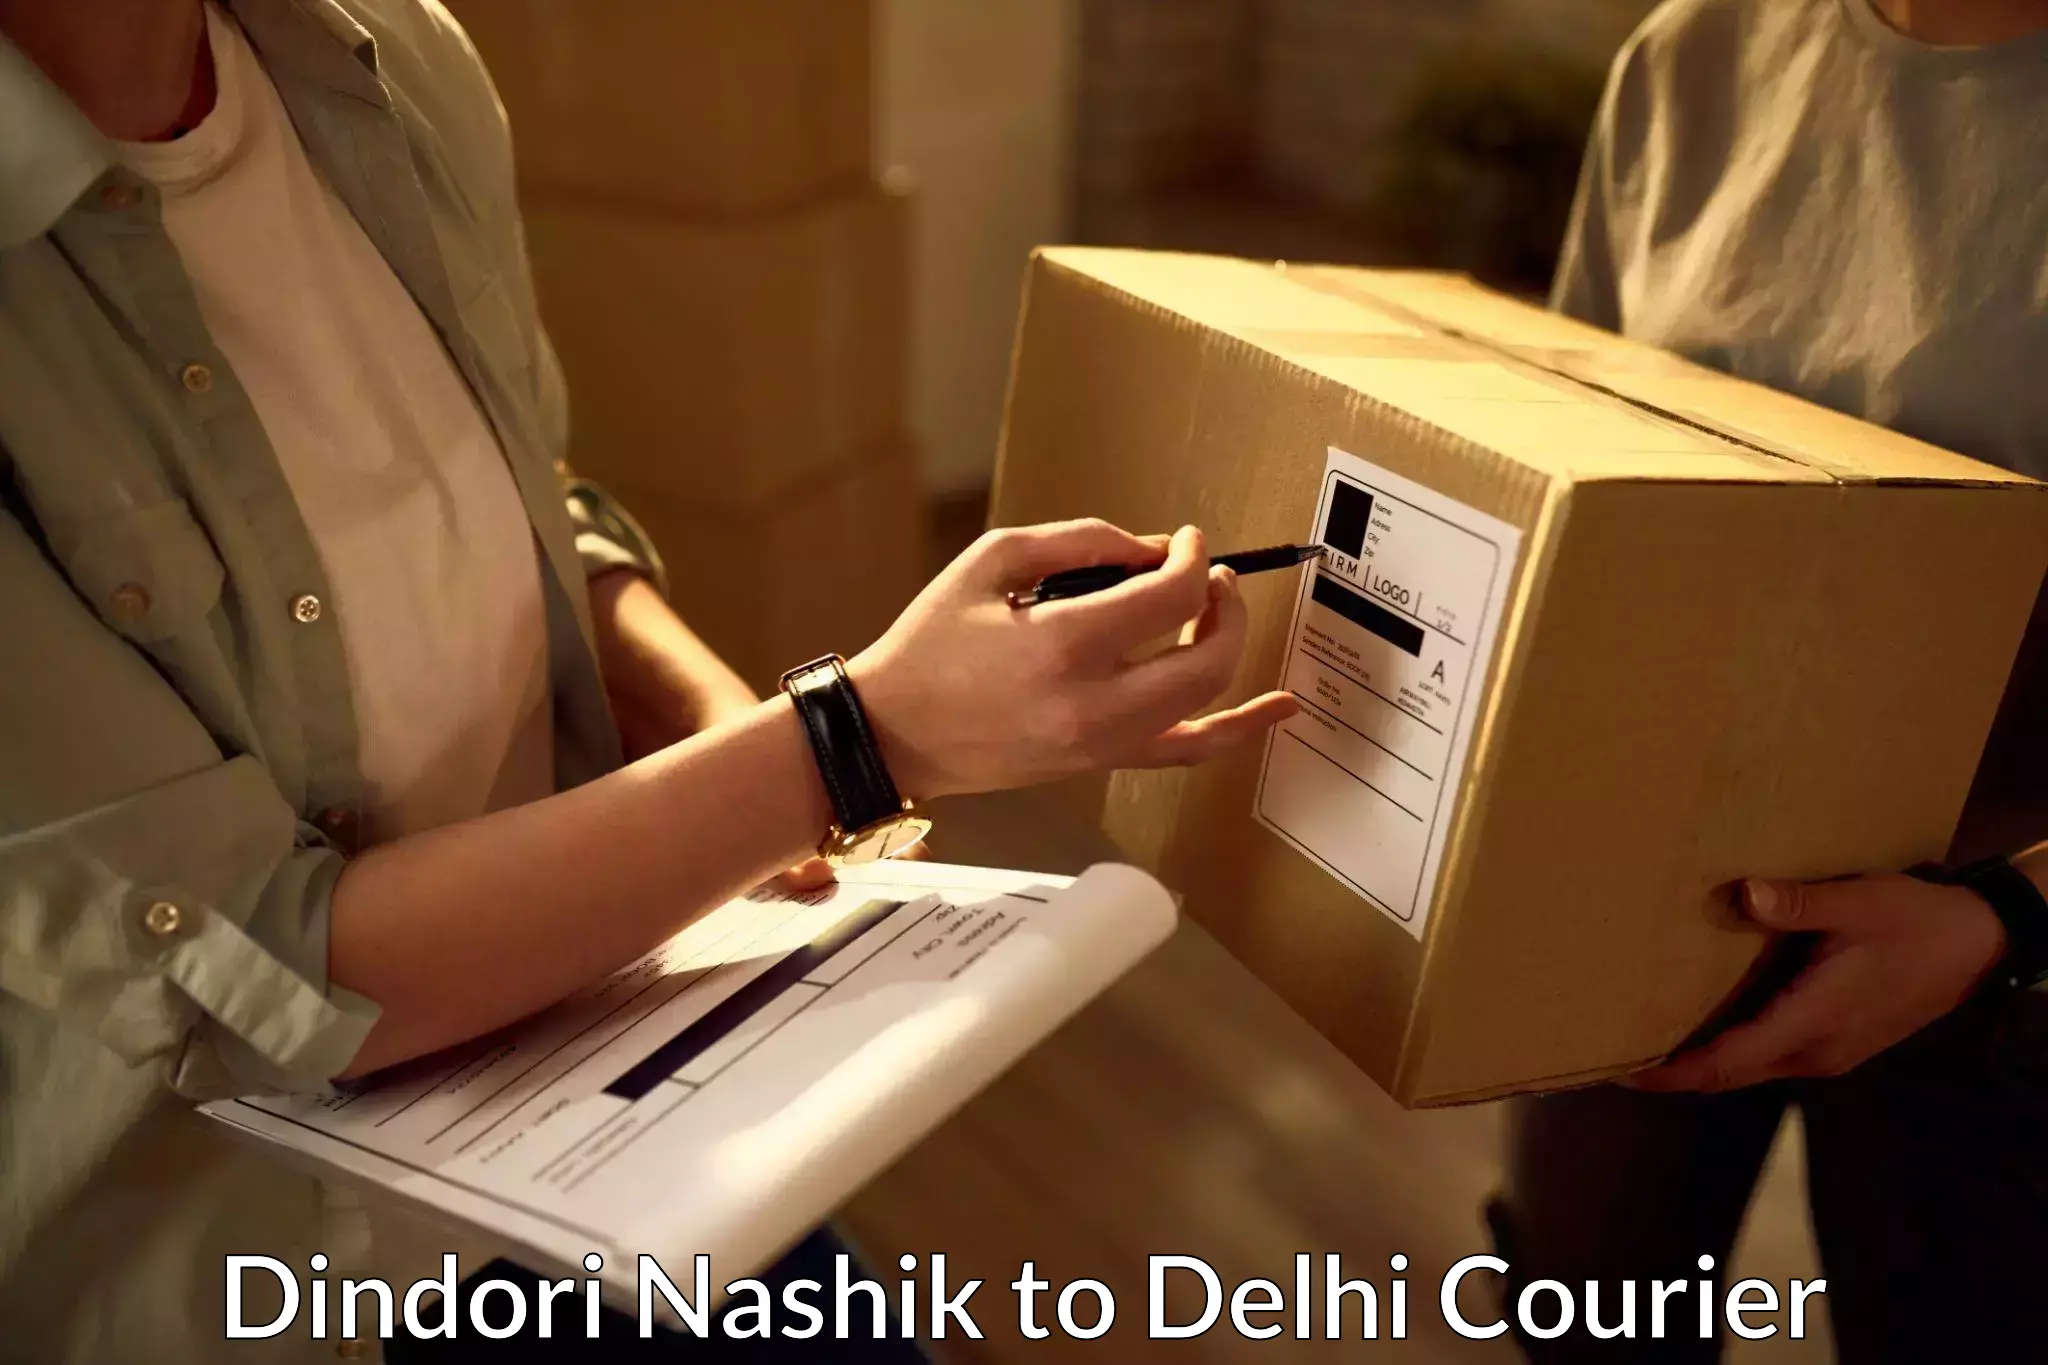 Speedy delivery service Dindori Nashik to Sarojini Nagar